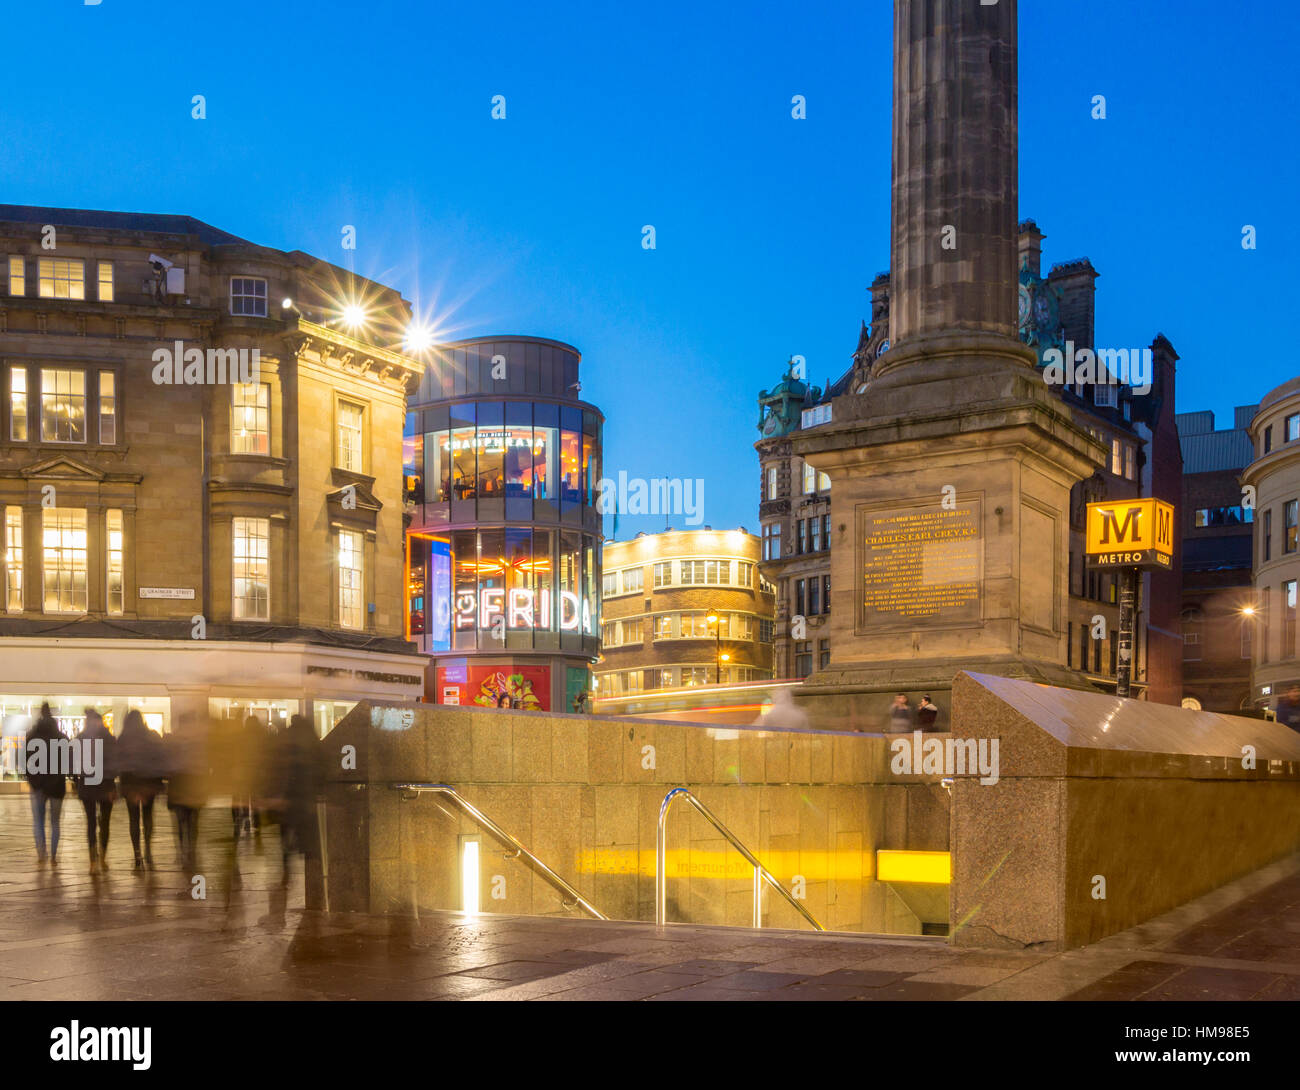 Entrance to Monument Metro station. Newcastle upon Tyne, England. UK Stock Photo